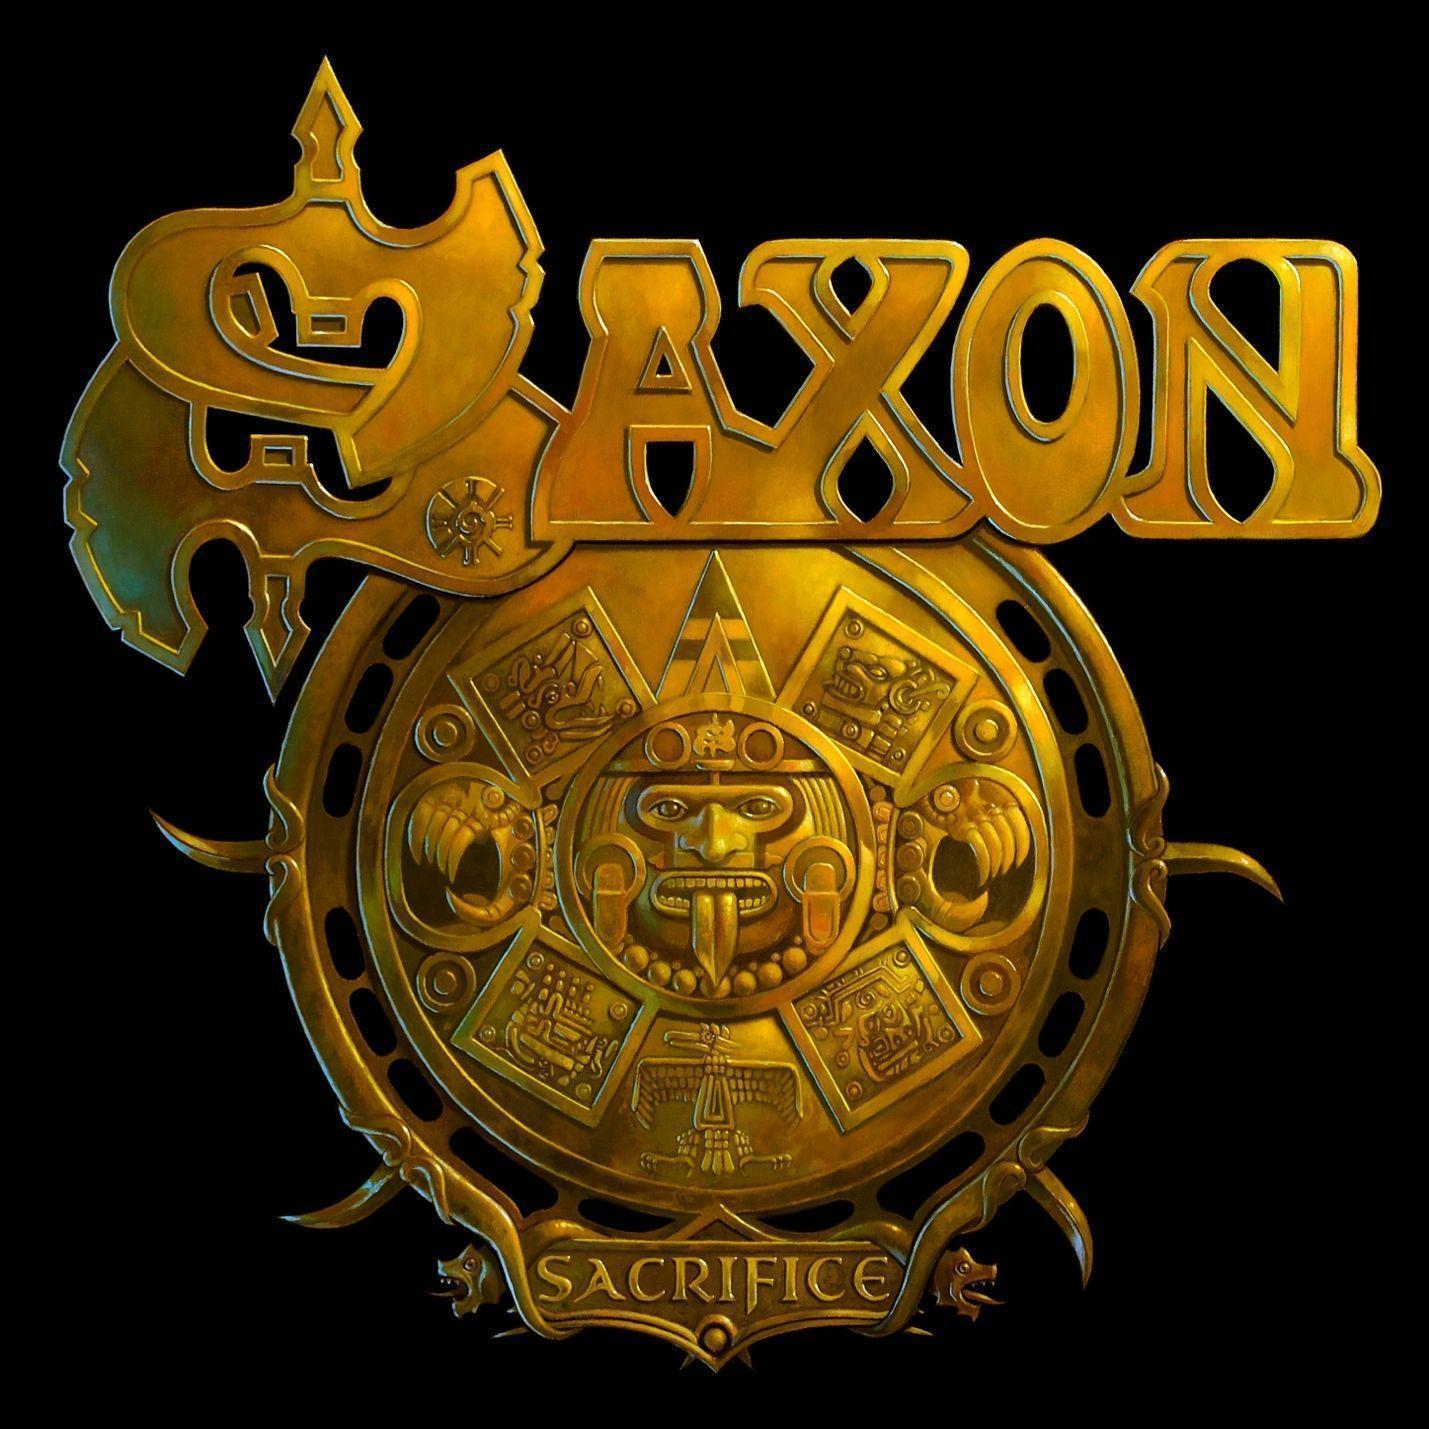 Saxon 1429x1429 #saxon